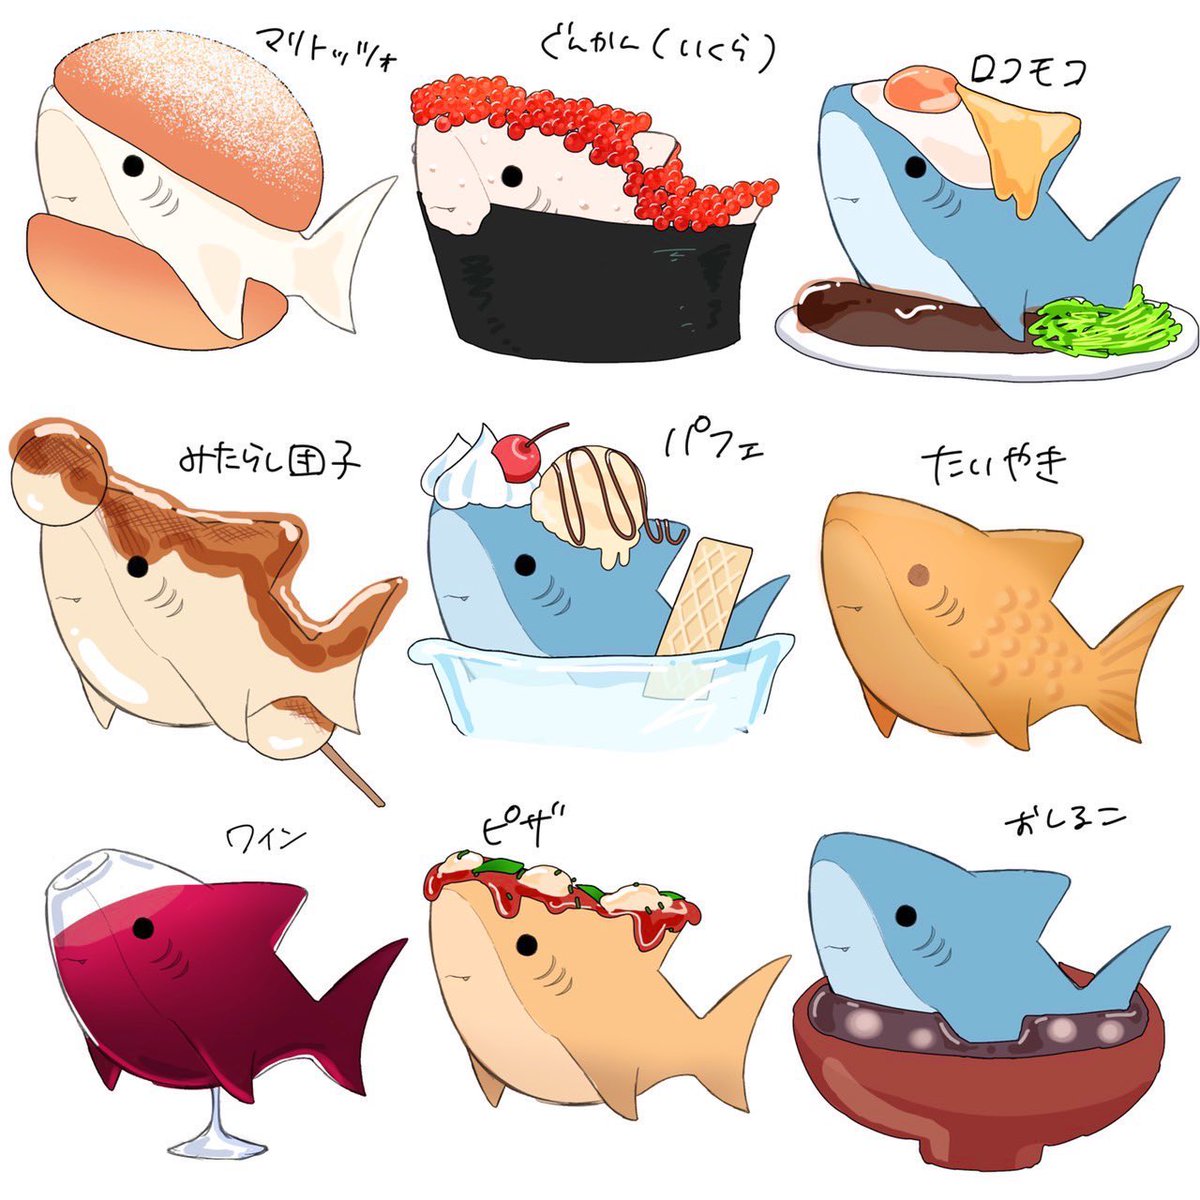 『食べ物×サメ』2 